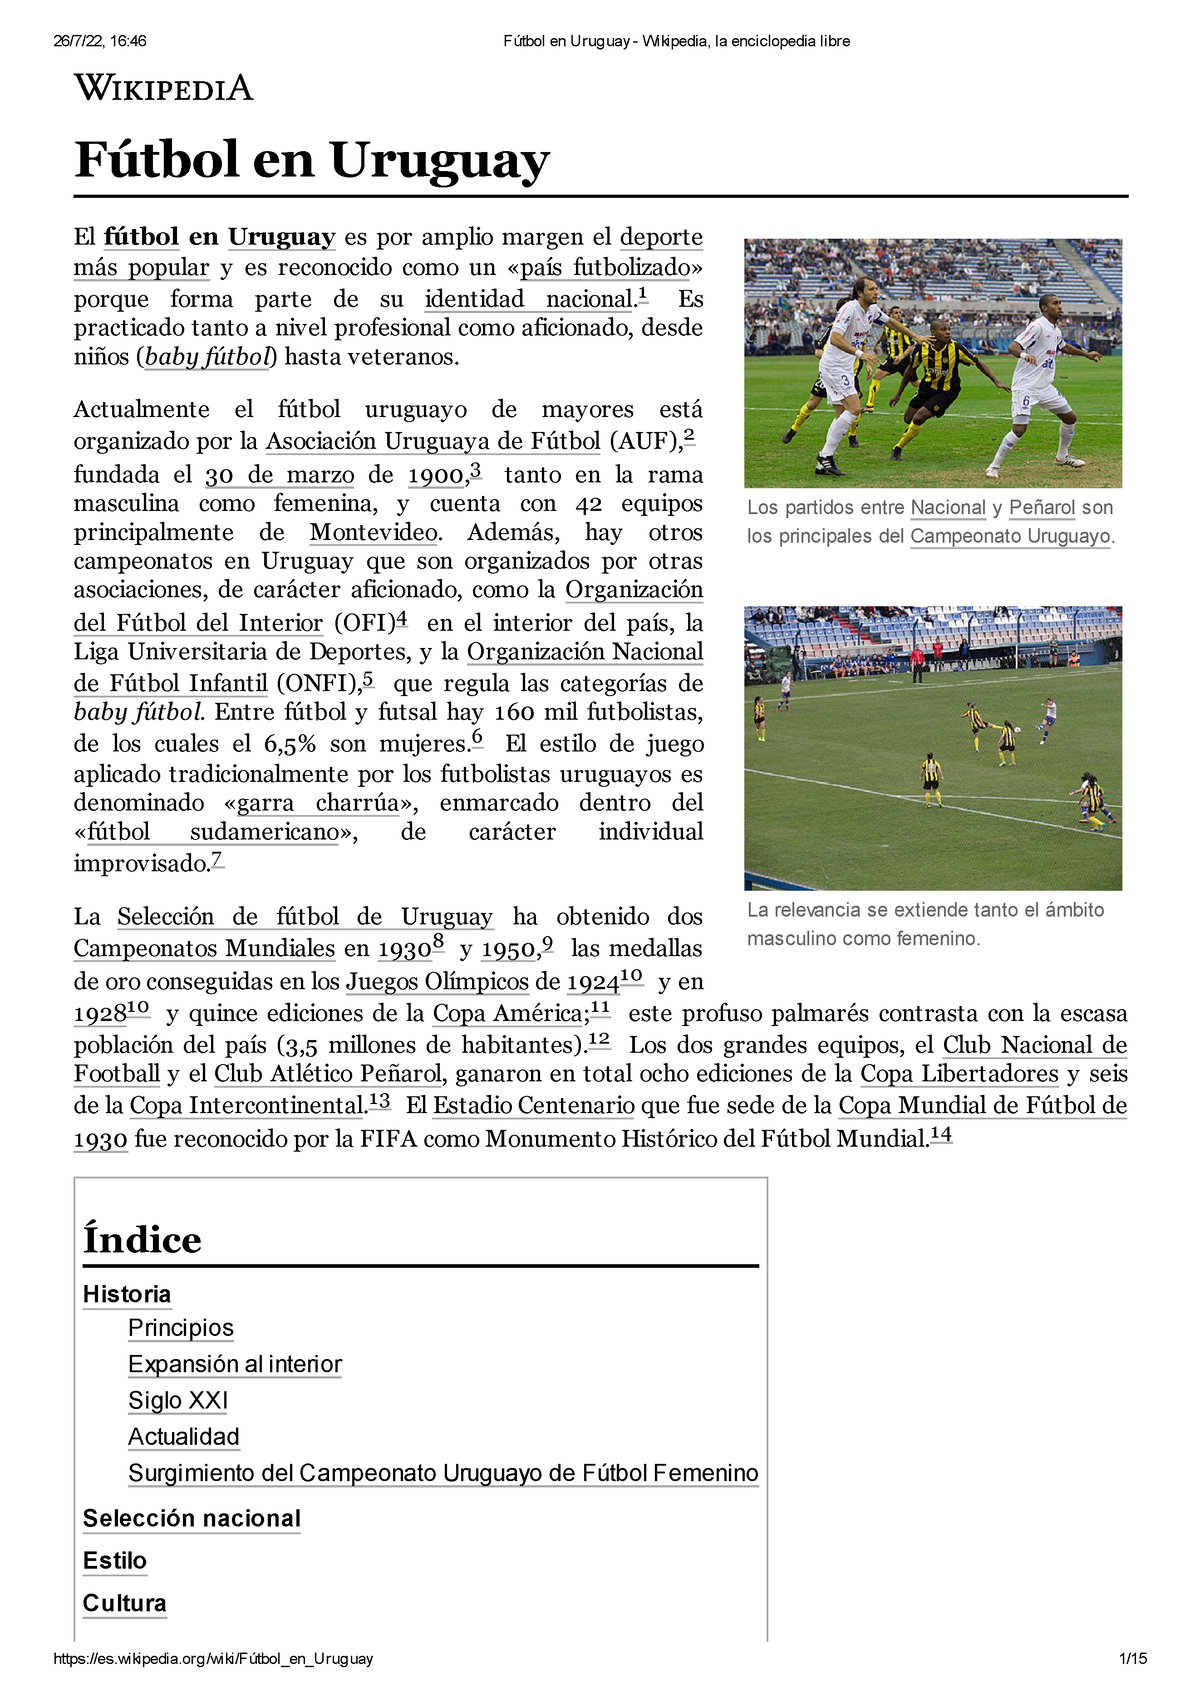 Sistema de ligas de fútbol de Uruguay - Wikipedia, la enciclopedia